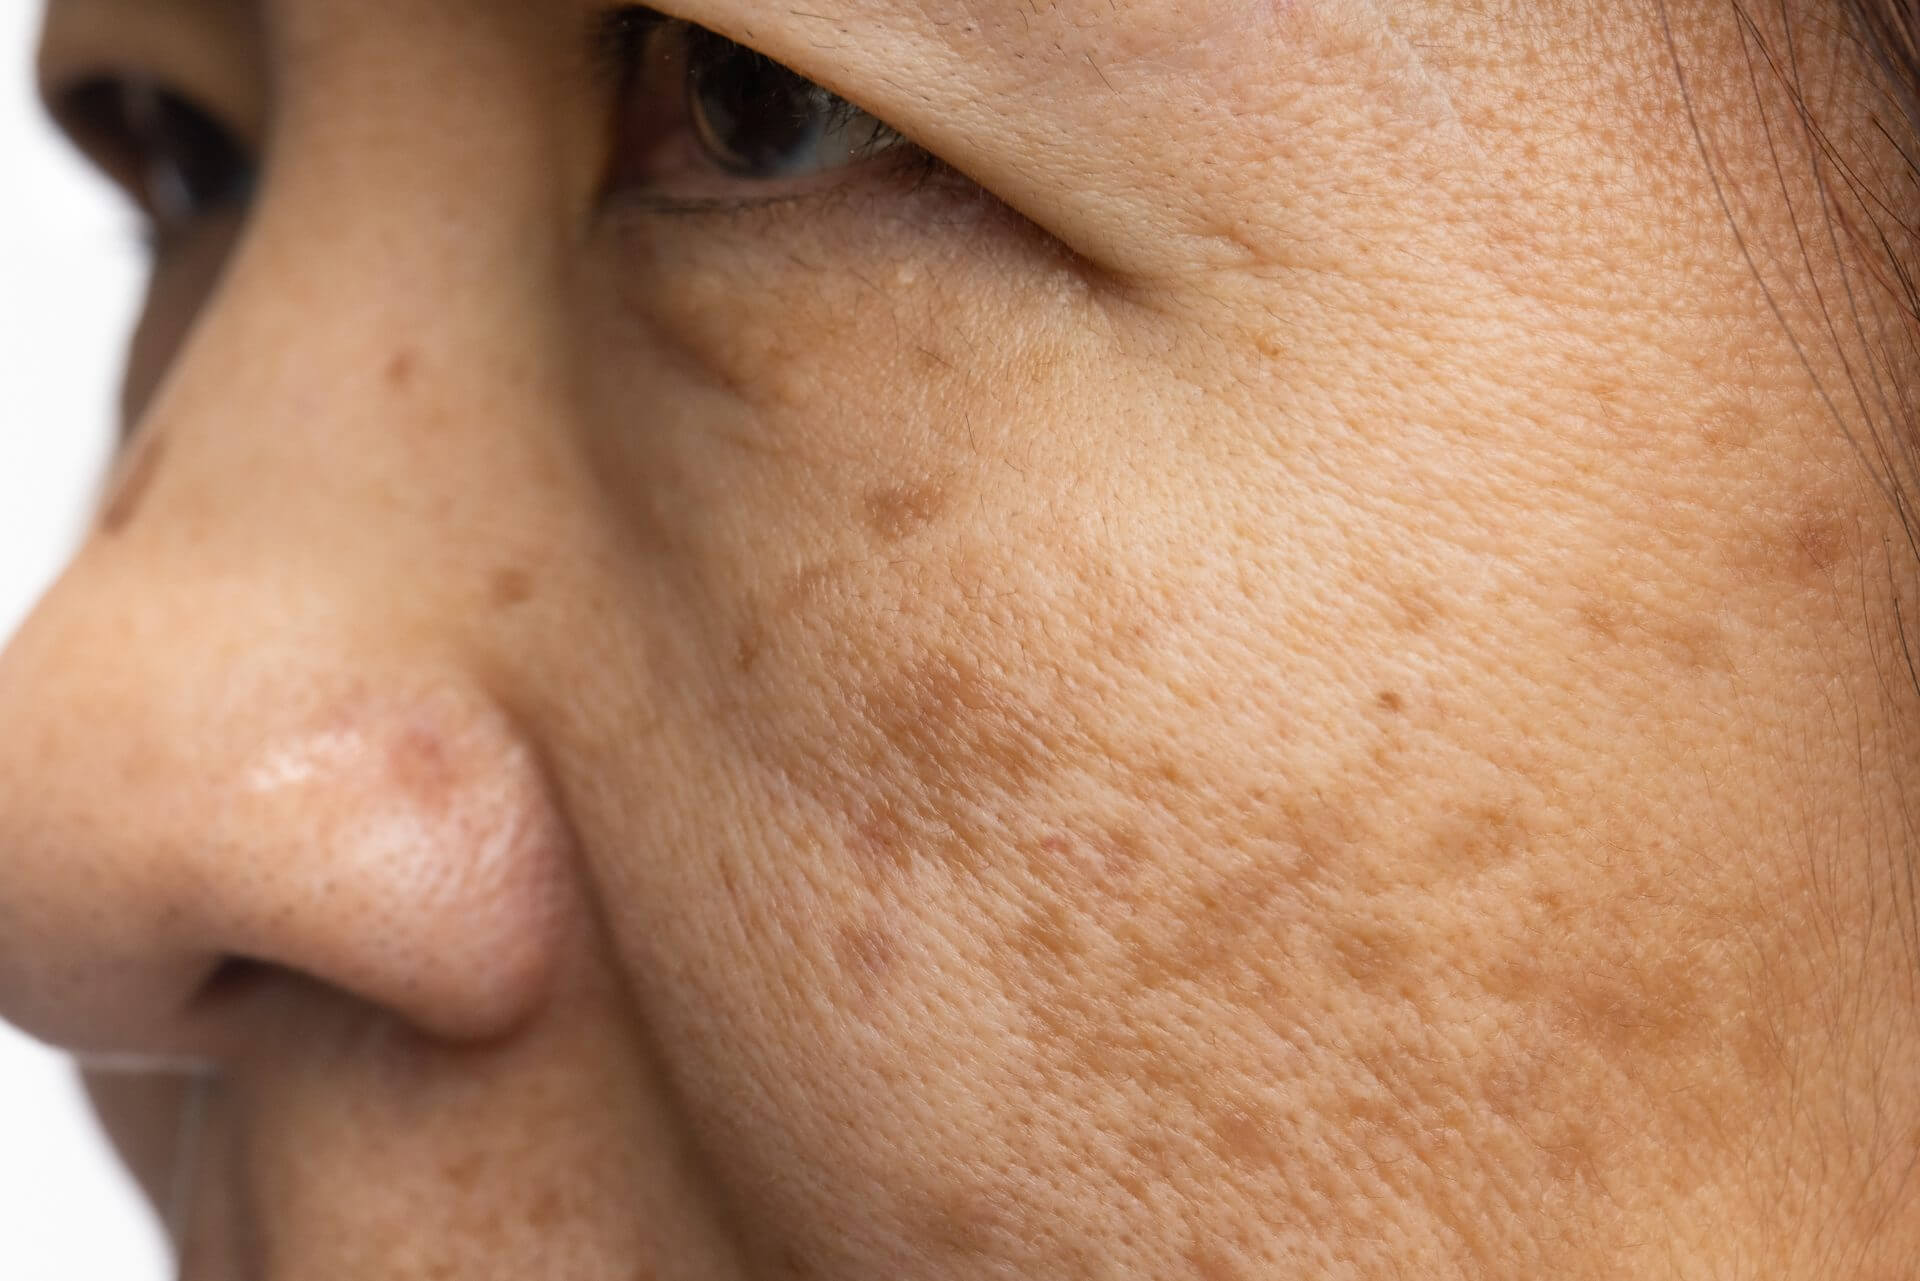 pigmentation spots on face